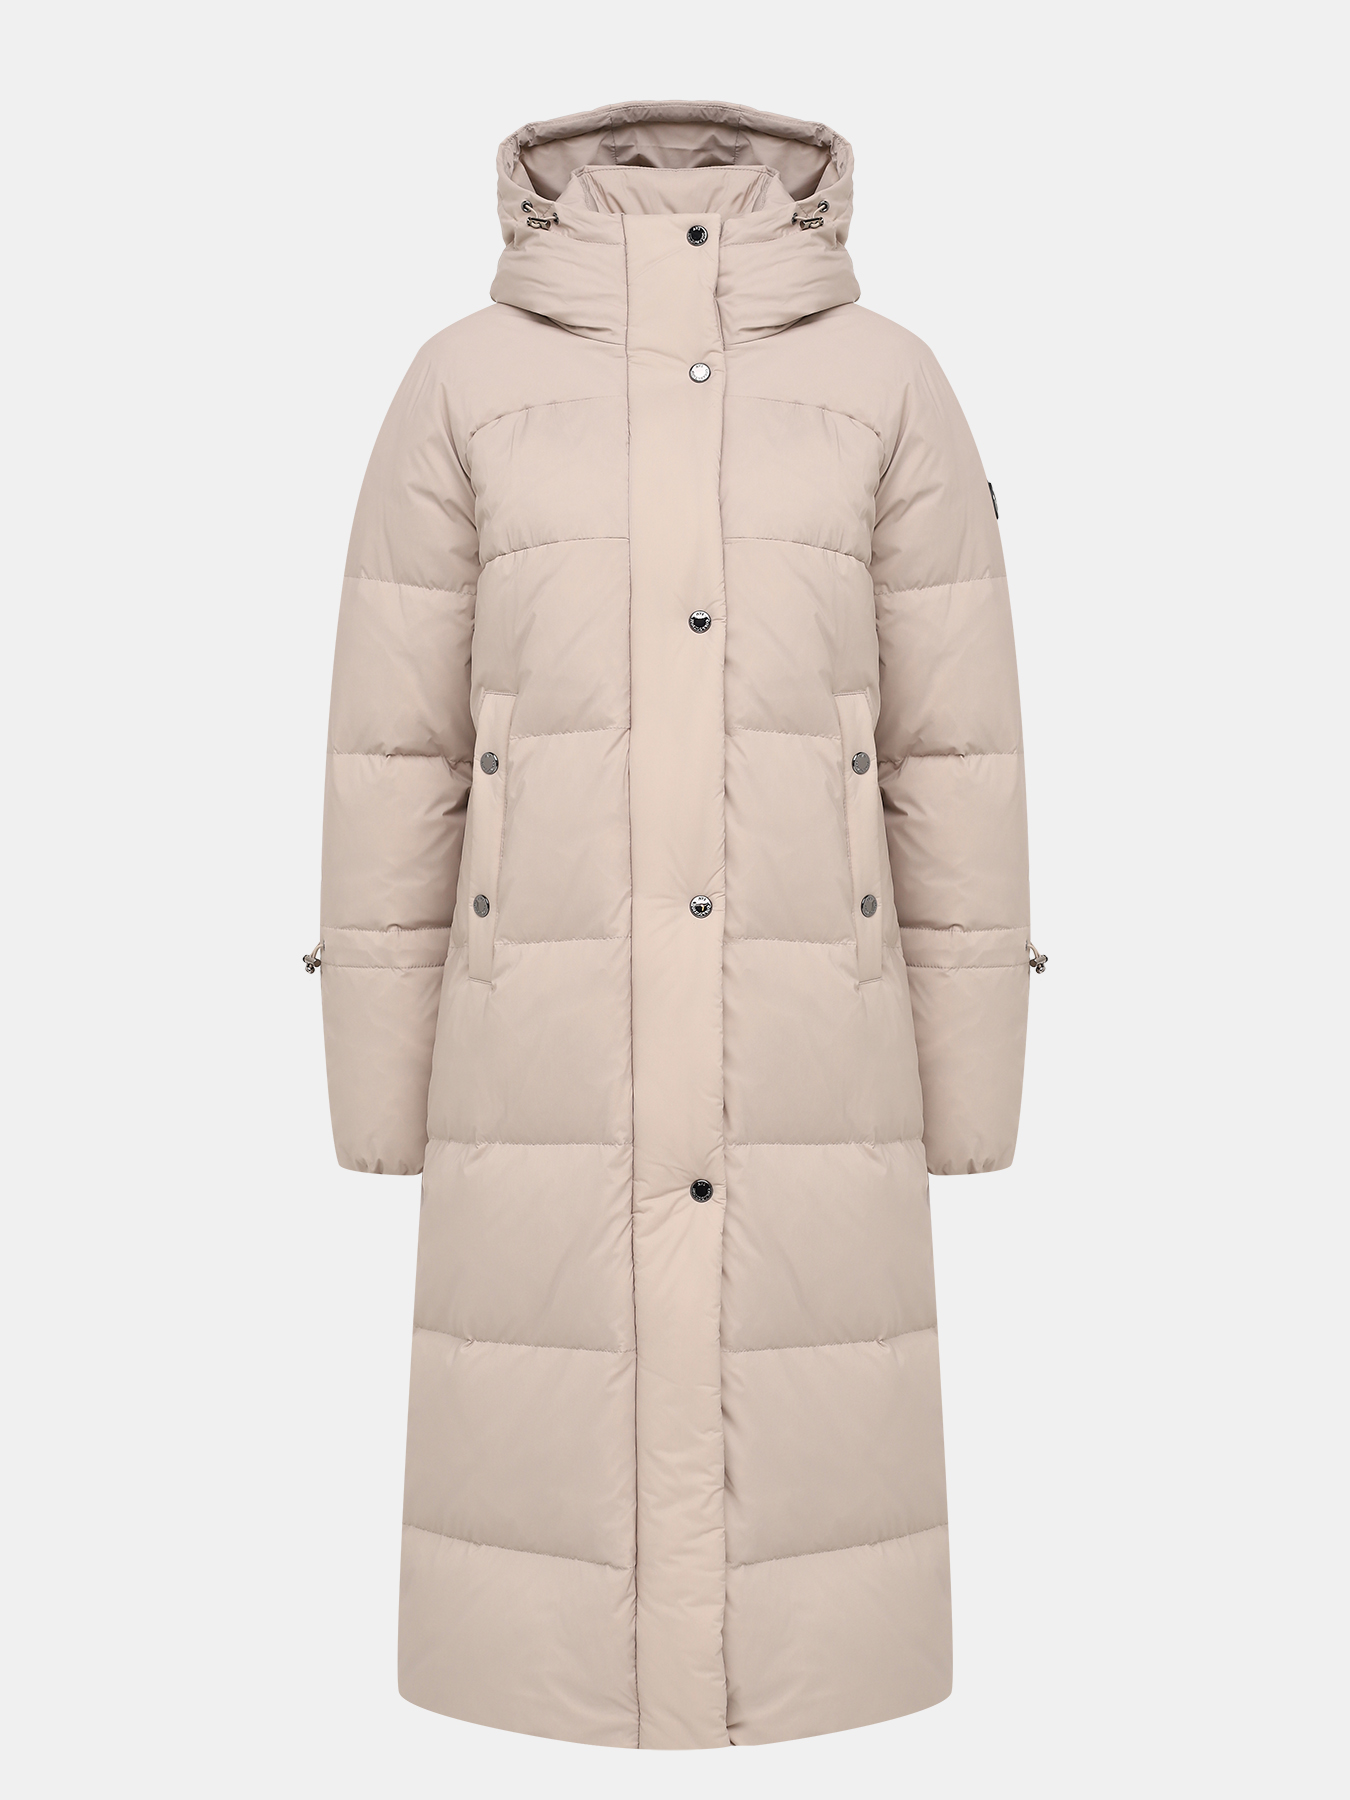 Пальто зимнее AVI 433604-025, цвет бежевый, размер 48